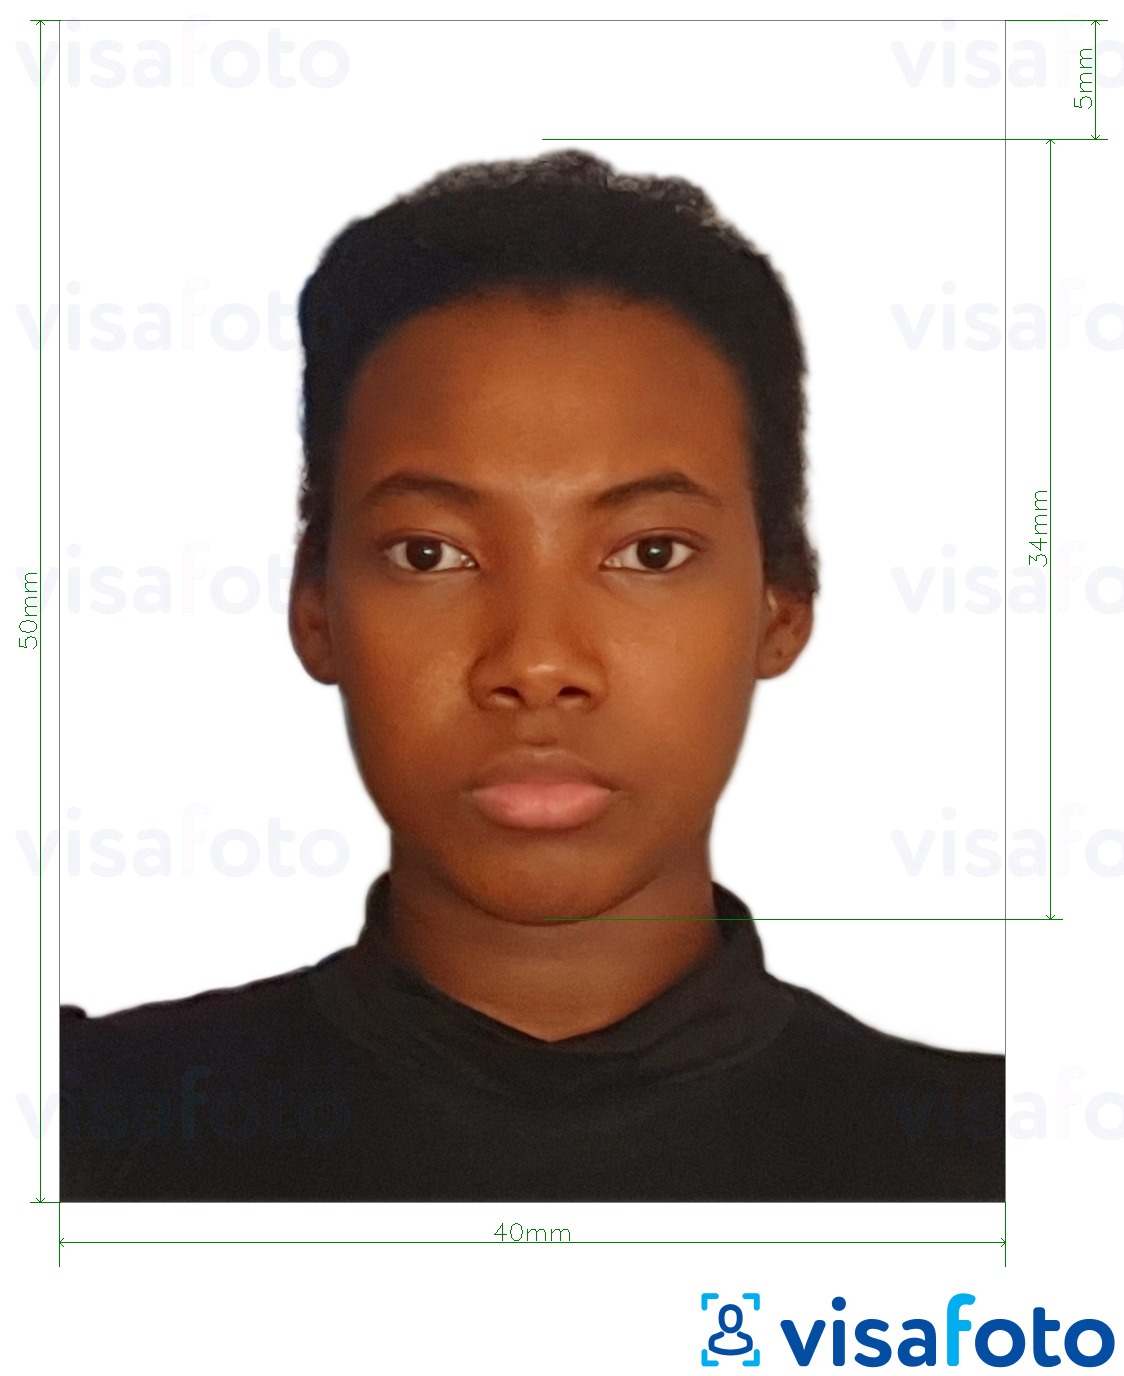 Przykład zdjęcia dla Paszport kameruński 4x5 cm (40x50 mm) z podaniem dokładnego rozmiaru.